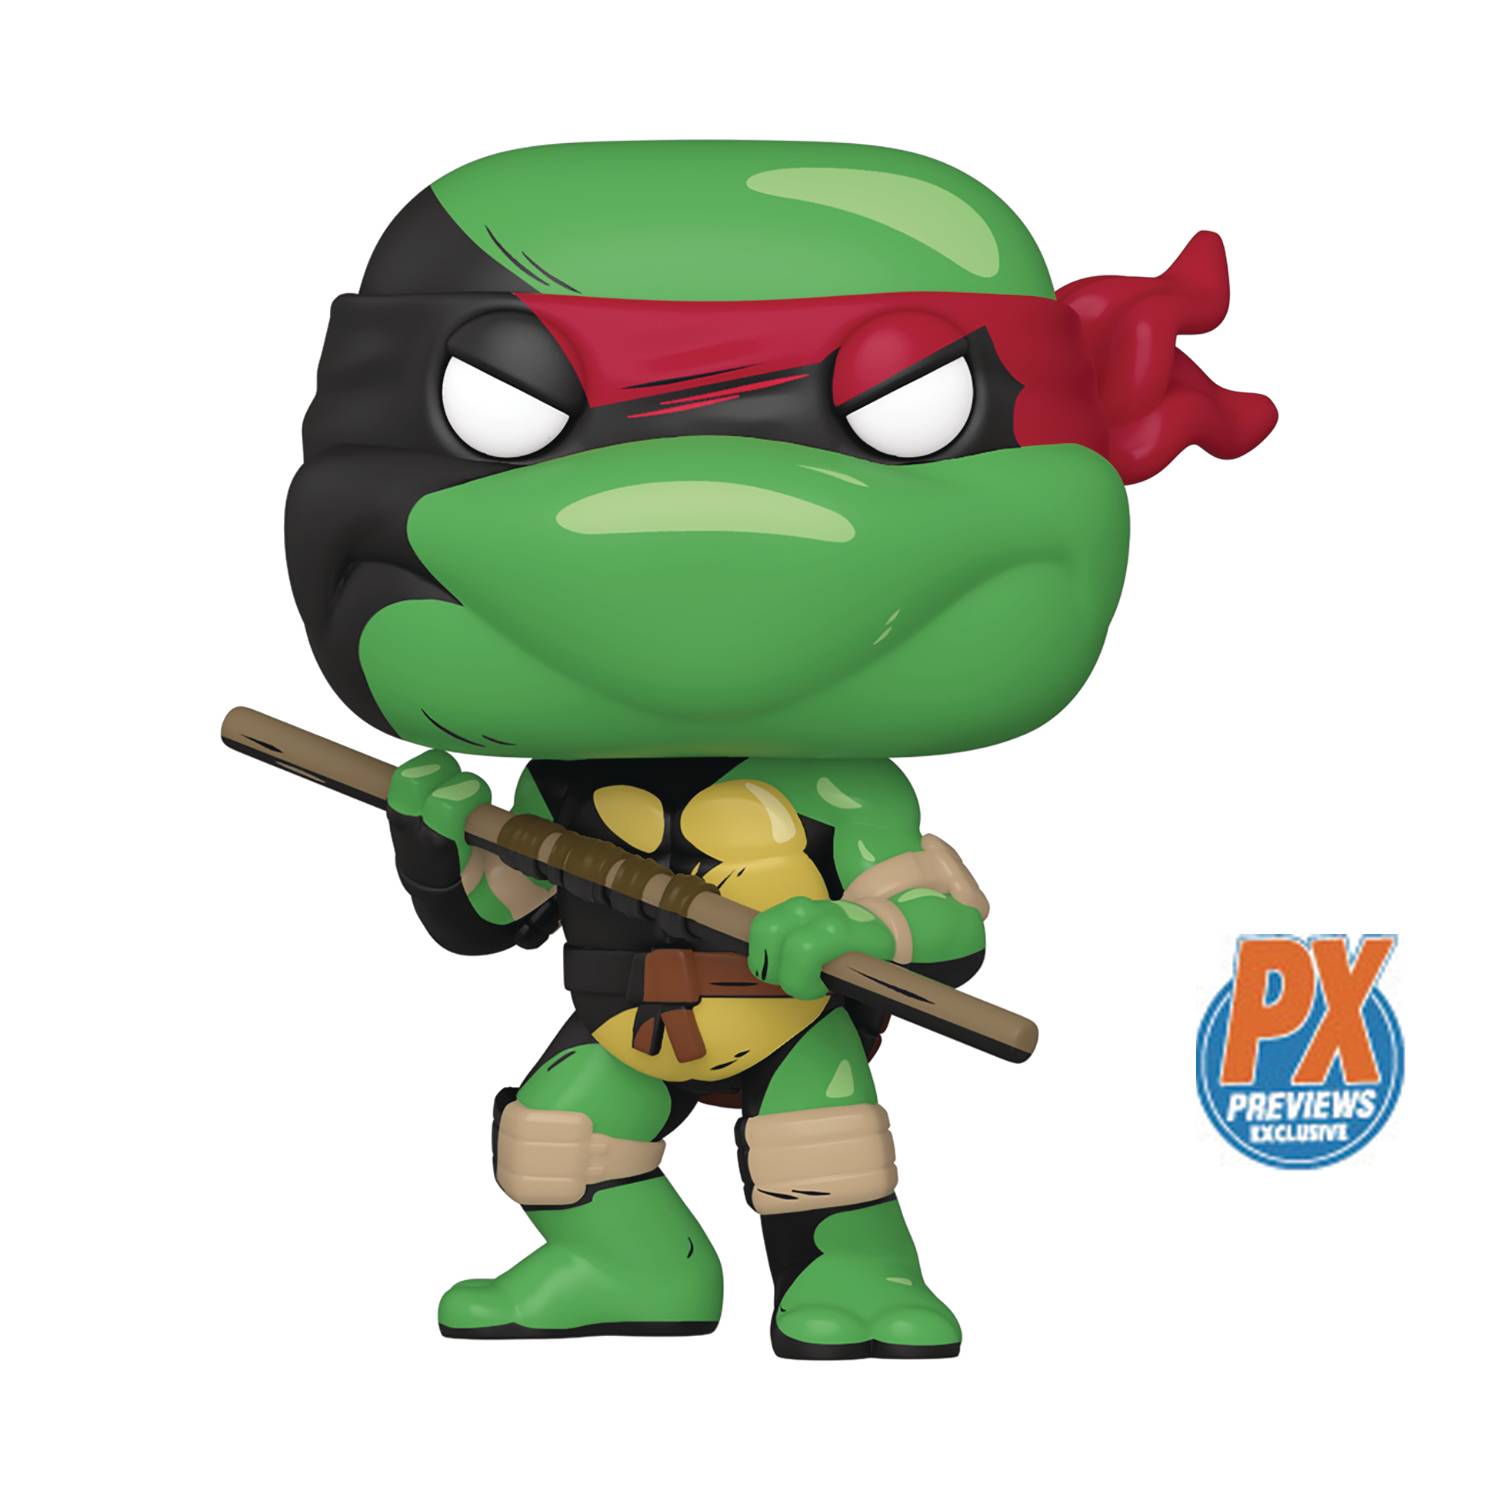 Pop Comics Teenage Mutant Ninja Turtles Donatello Px Vinyl Figure